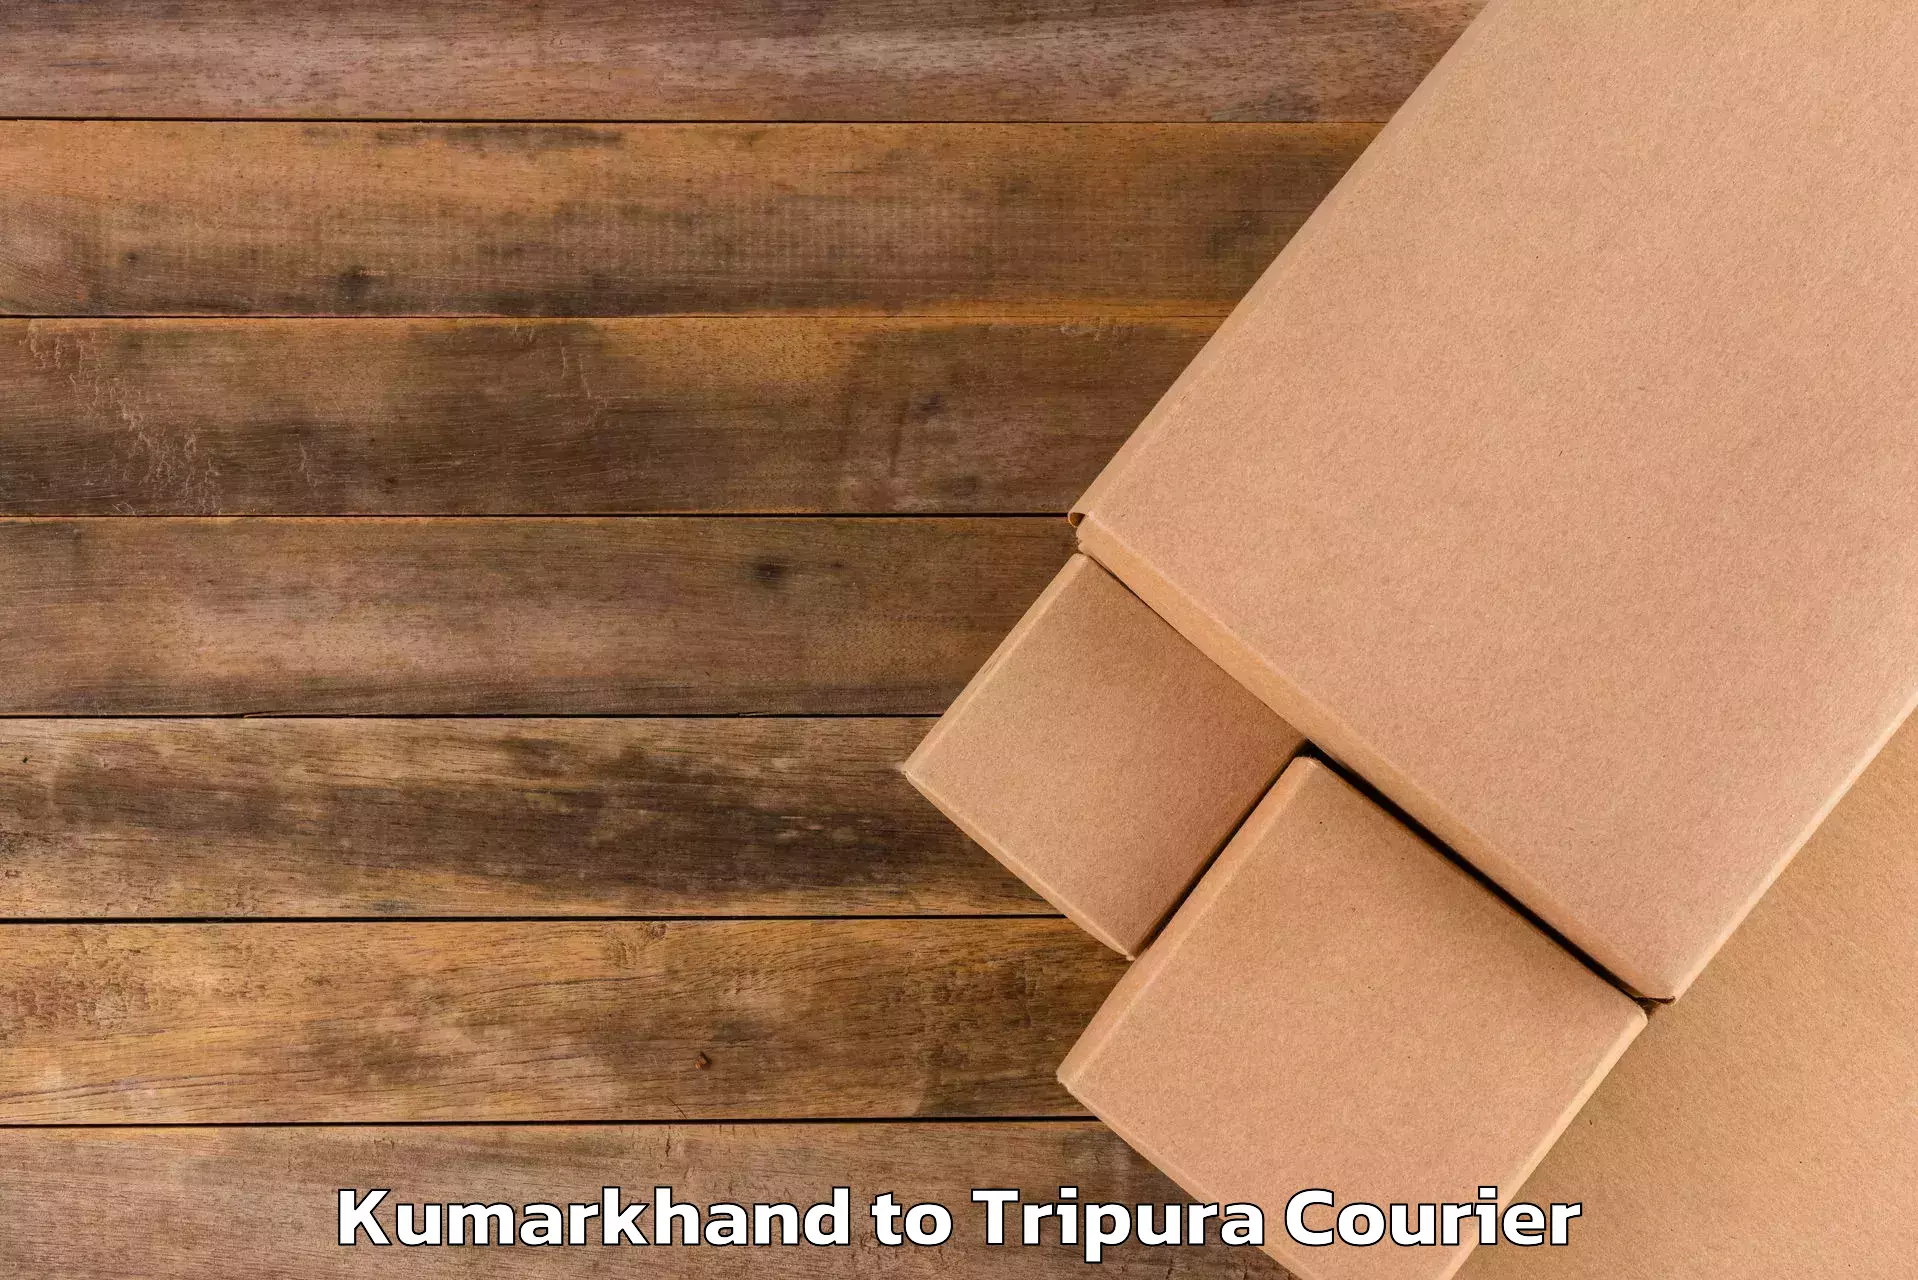 Luggage shipment tracking Kumarkhand to Udaipur Tripura